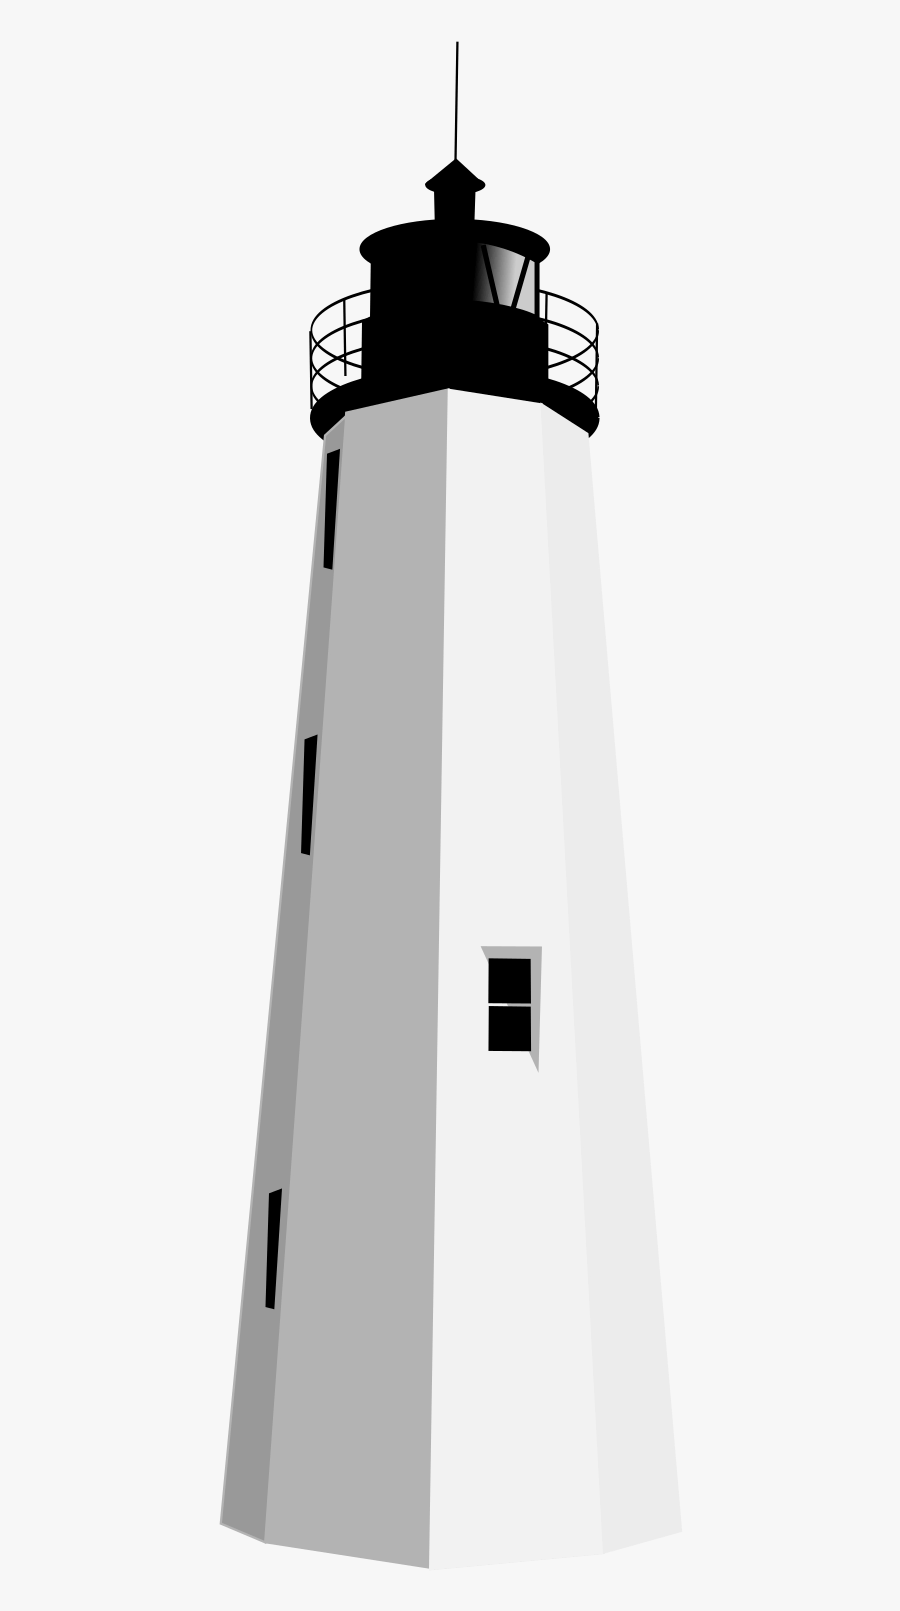 Black White Lighthouse Clipart - Clip Art, Transparent Clipart